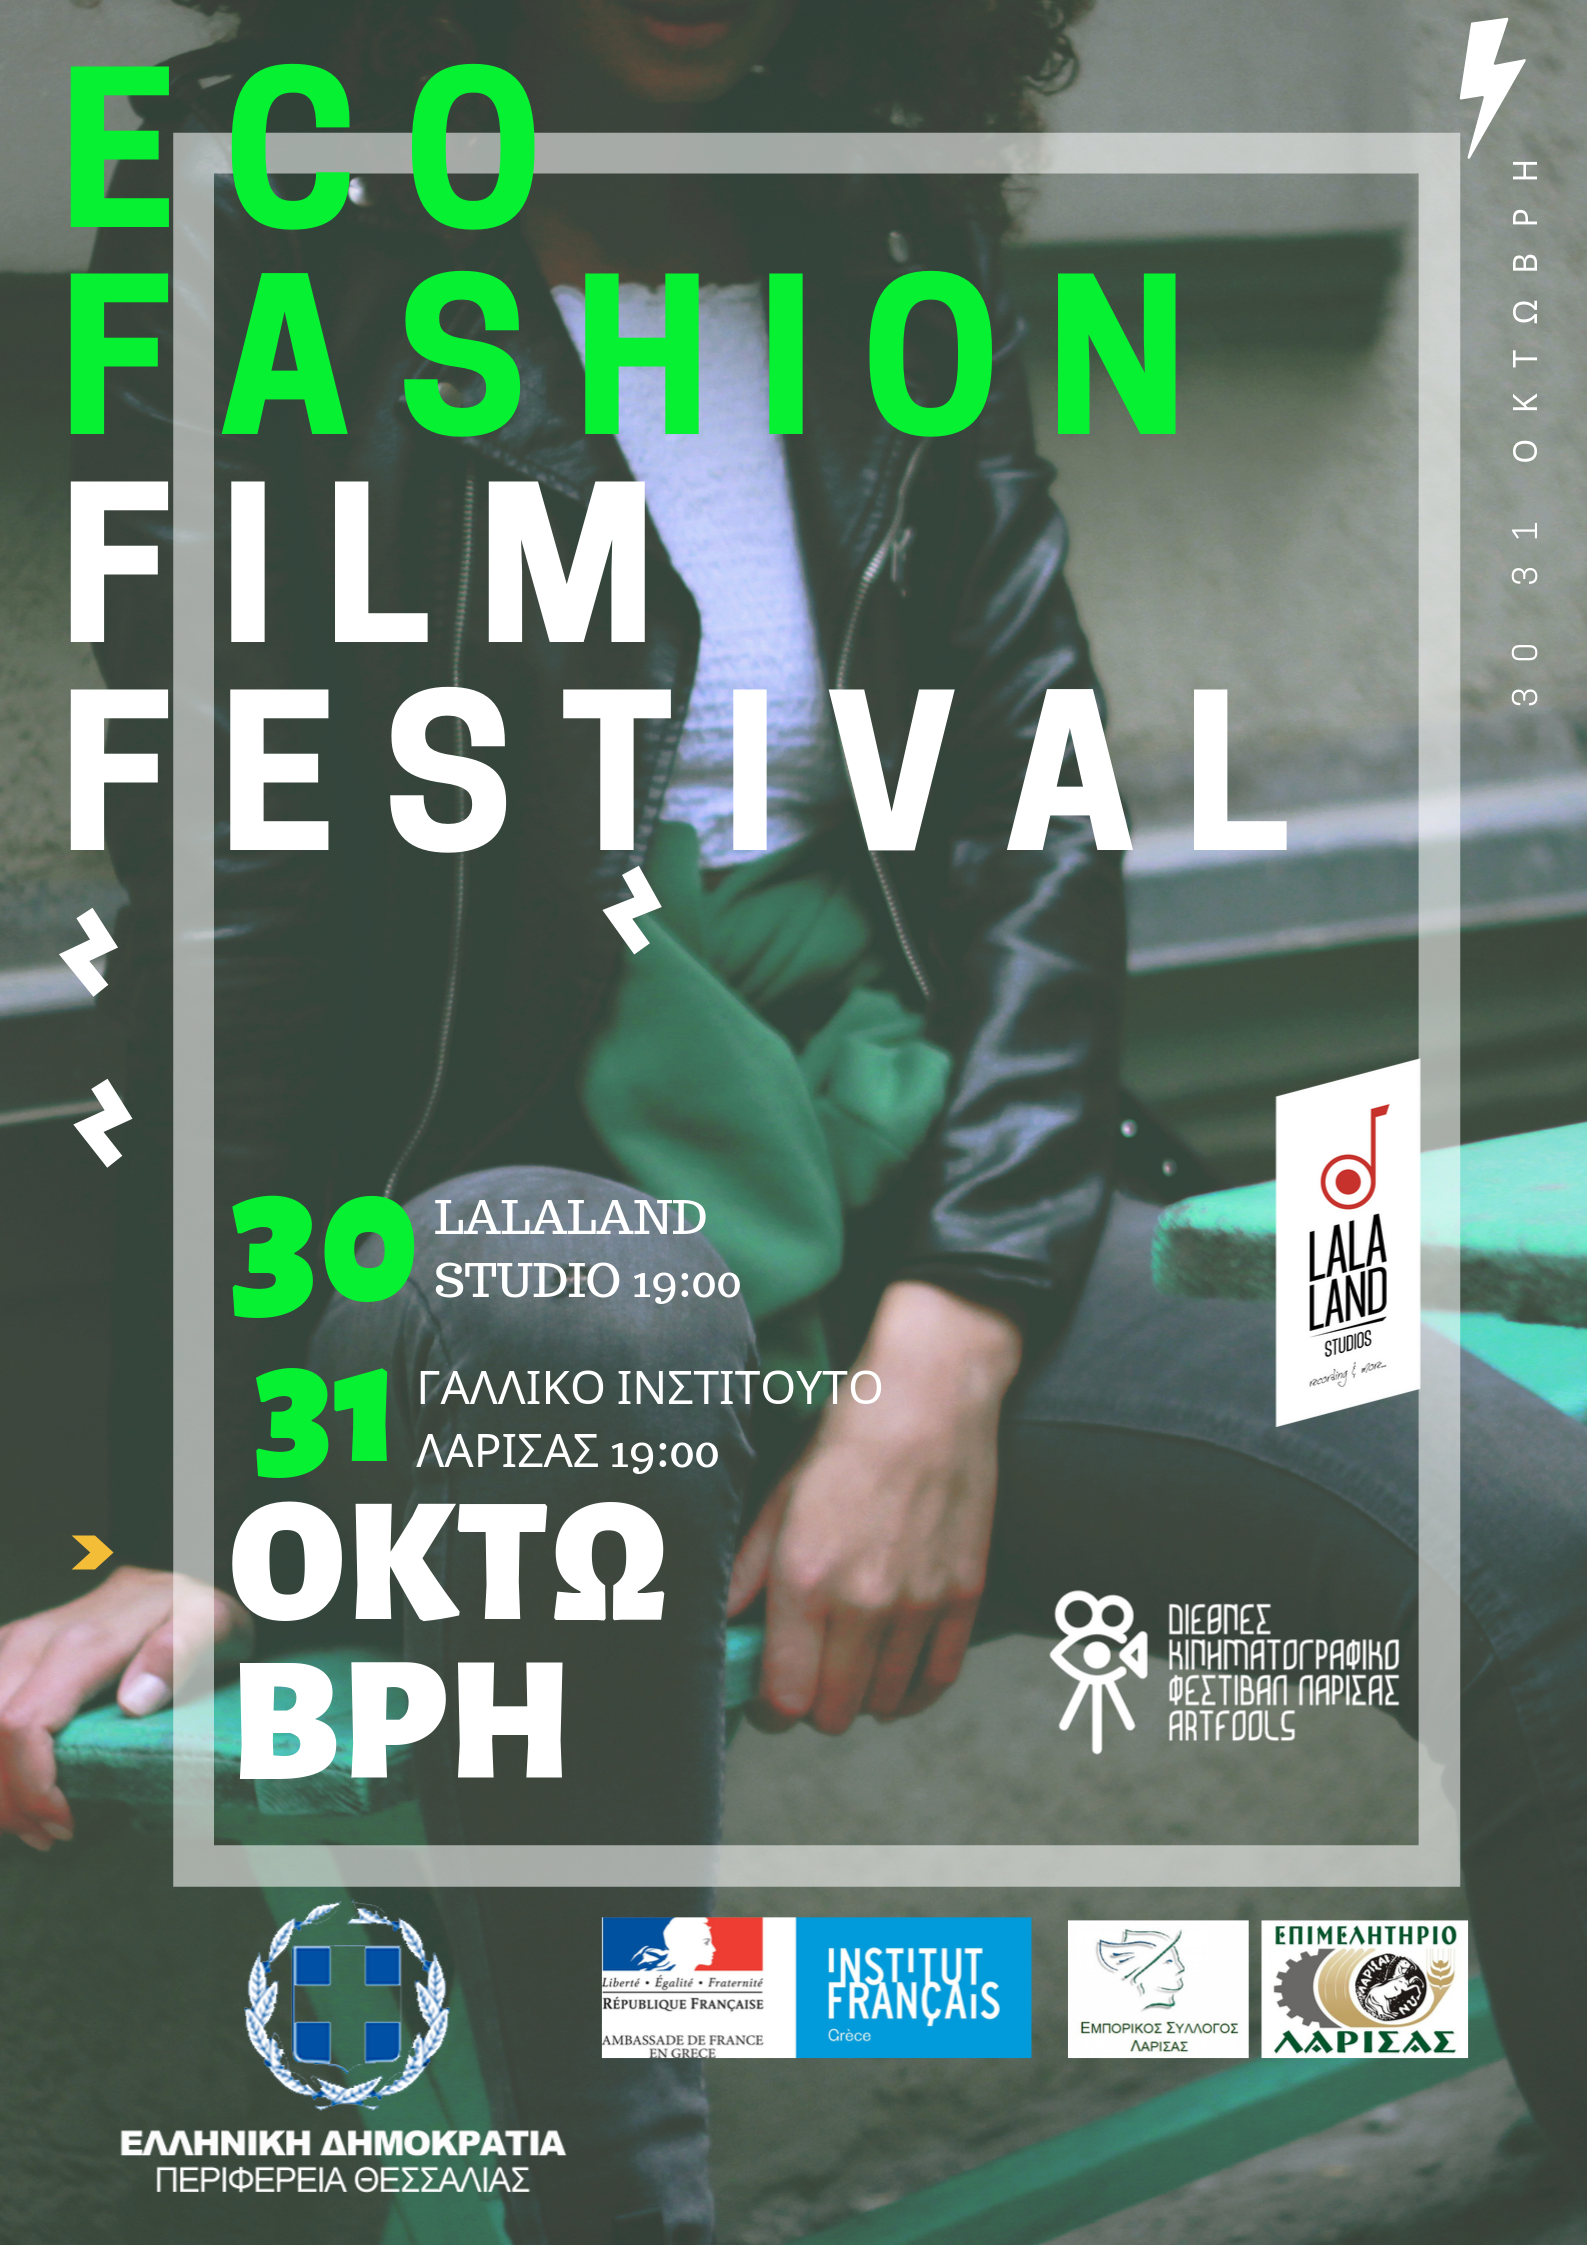 Τρίτη χρονιά για το φεστιβάλ ταινιών μόδας στη Λάρισα 